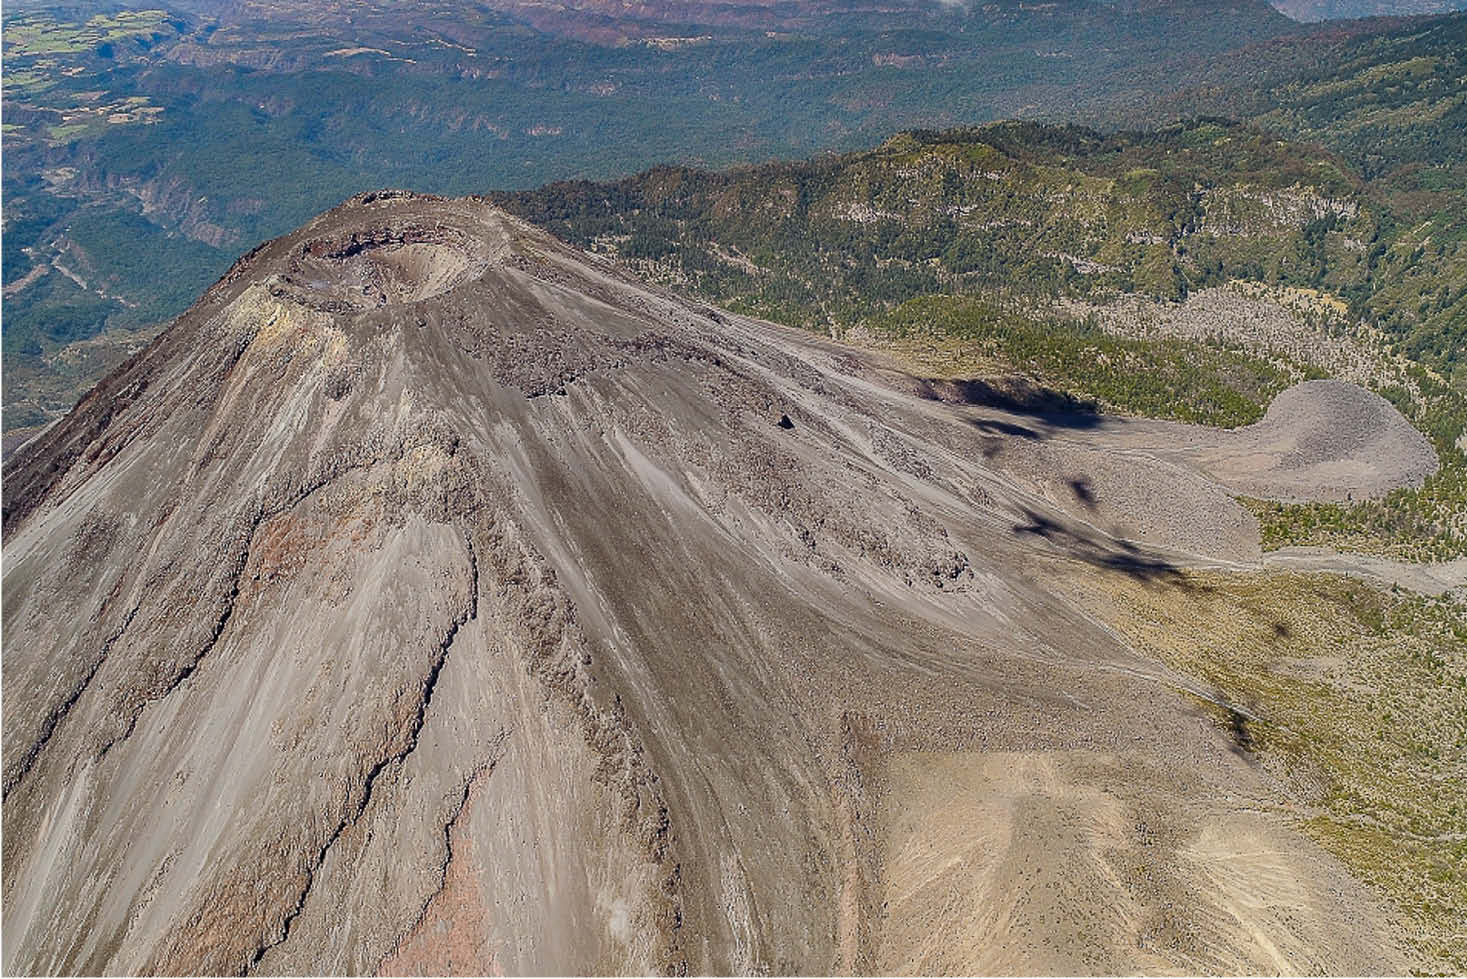 Imágenes de un sobrevuelo con dron para ver las condiciones del cráter del Volcán de Colima. Fotografía tomada del Centro Universitario de Estudios Vulcanológicos.